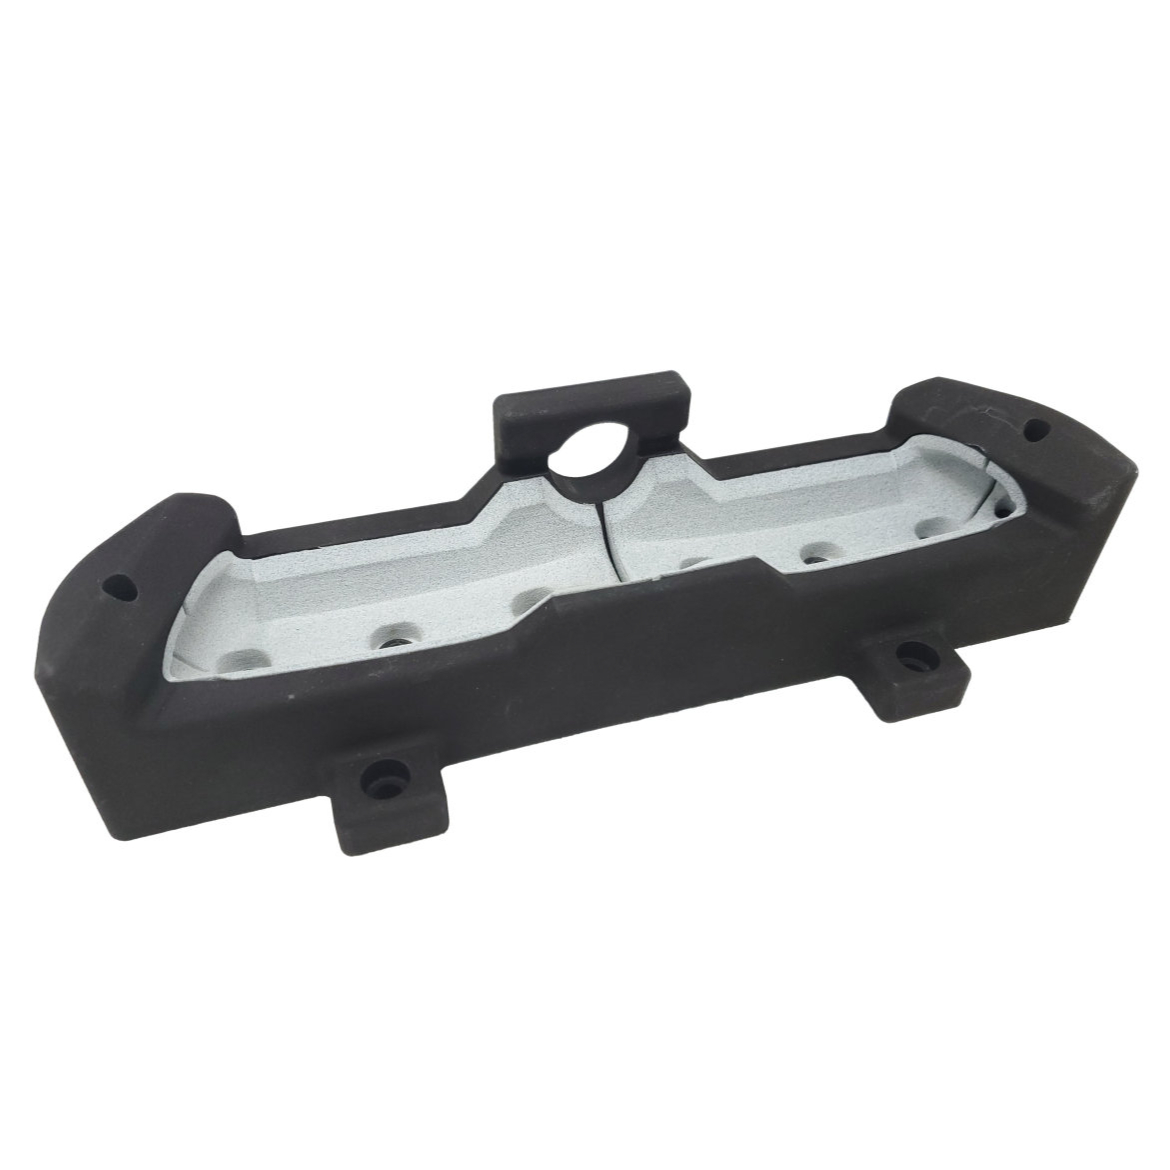 ESTANE 3D 热塑性聚氨酯 M95A夹具，用于自动安装汽车镀铬零件